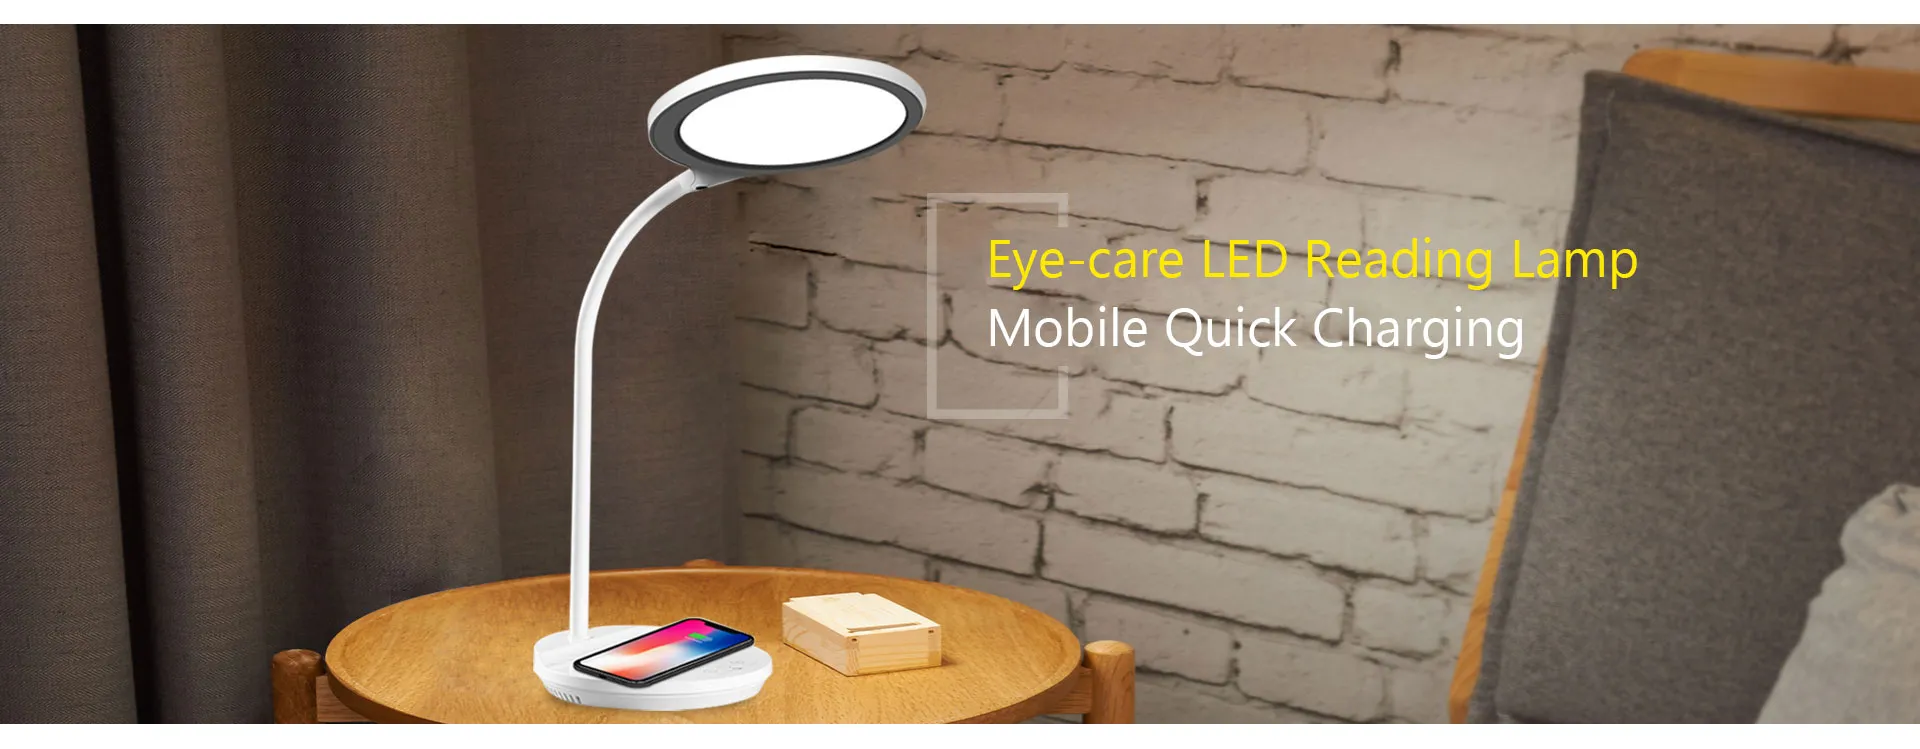 Eye-care LED Reading Lamp